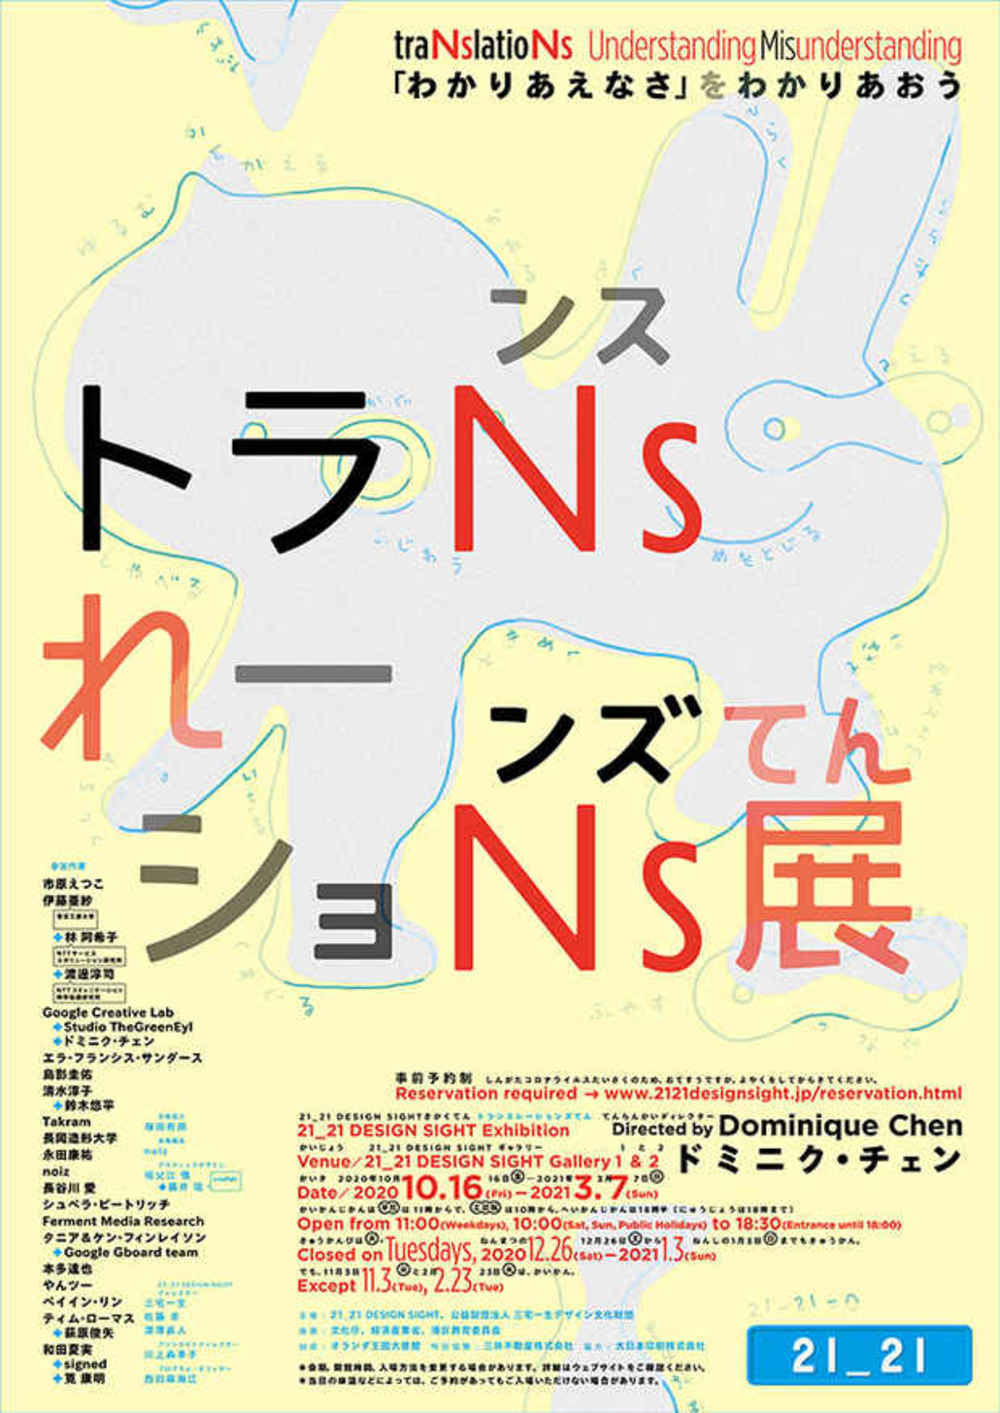 東京ミッドタウン「トランスレーションズ展 −『 わかりあえなさ』をわかりあおう」展を見に行く！      